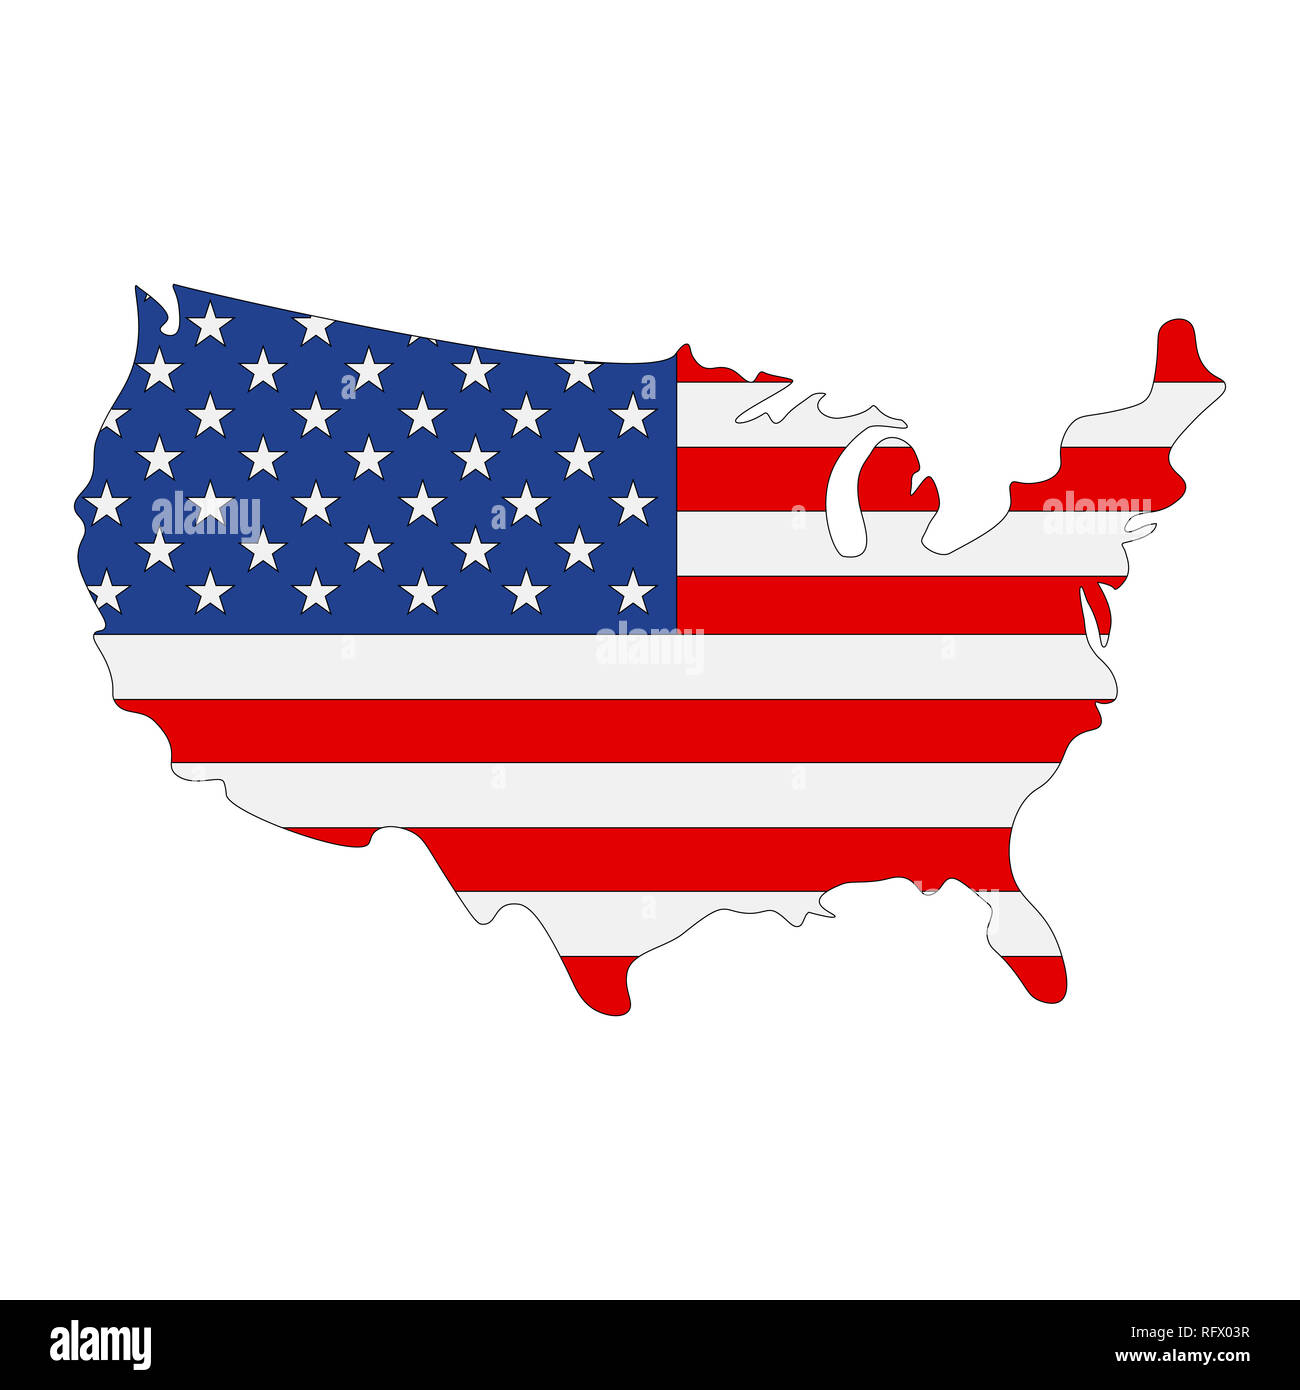 Mappa di Stati Uniti d'America con bandiera all'interno. Stati Uniti d'America mappa immagine Foto Stock